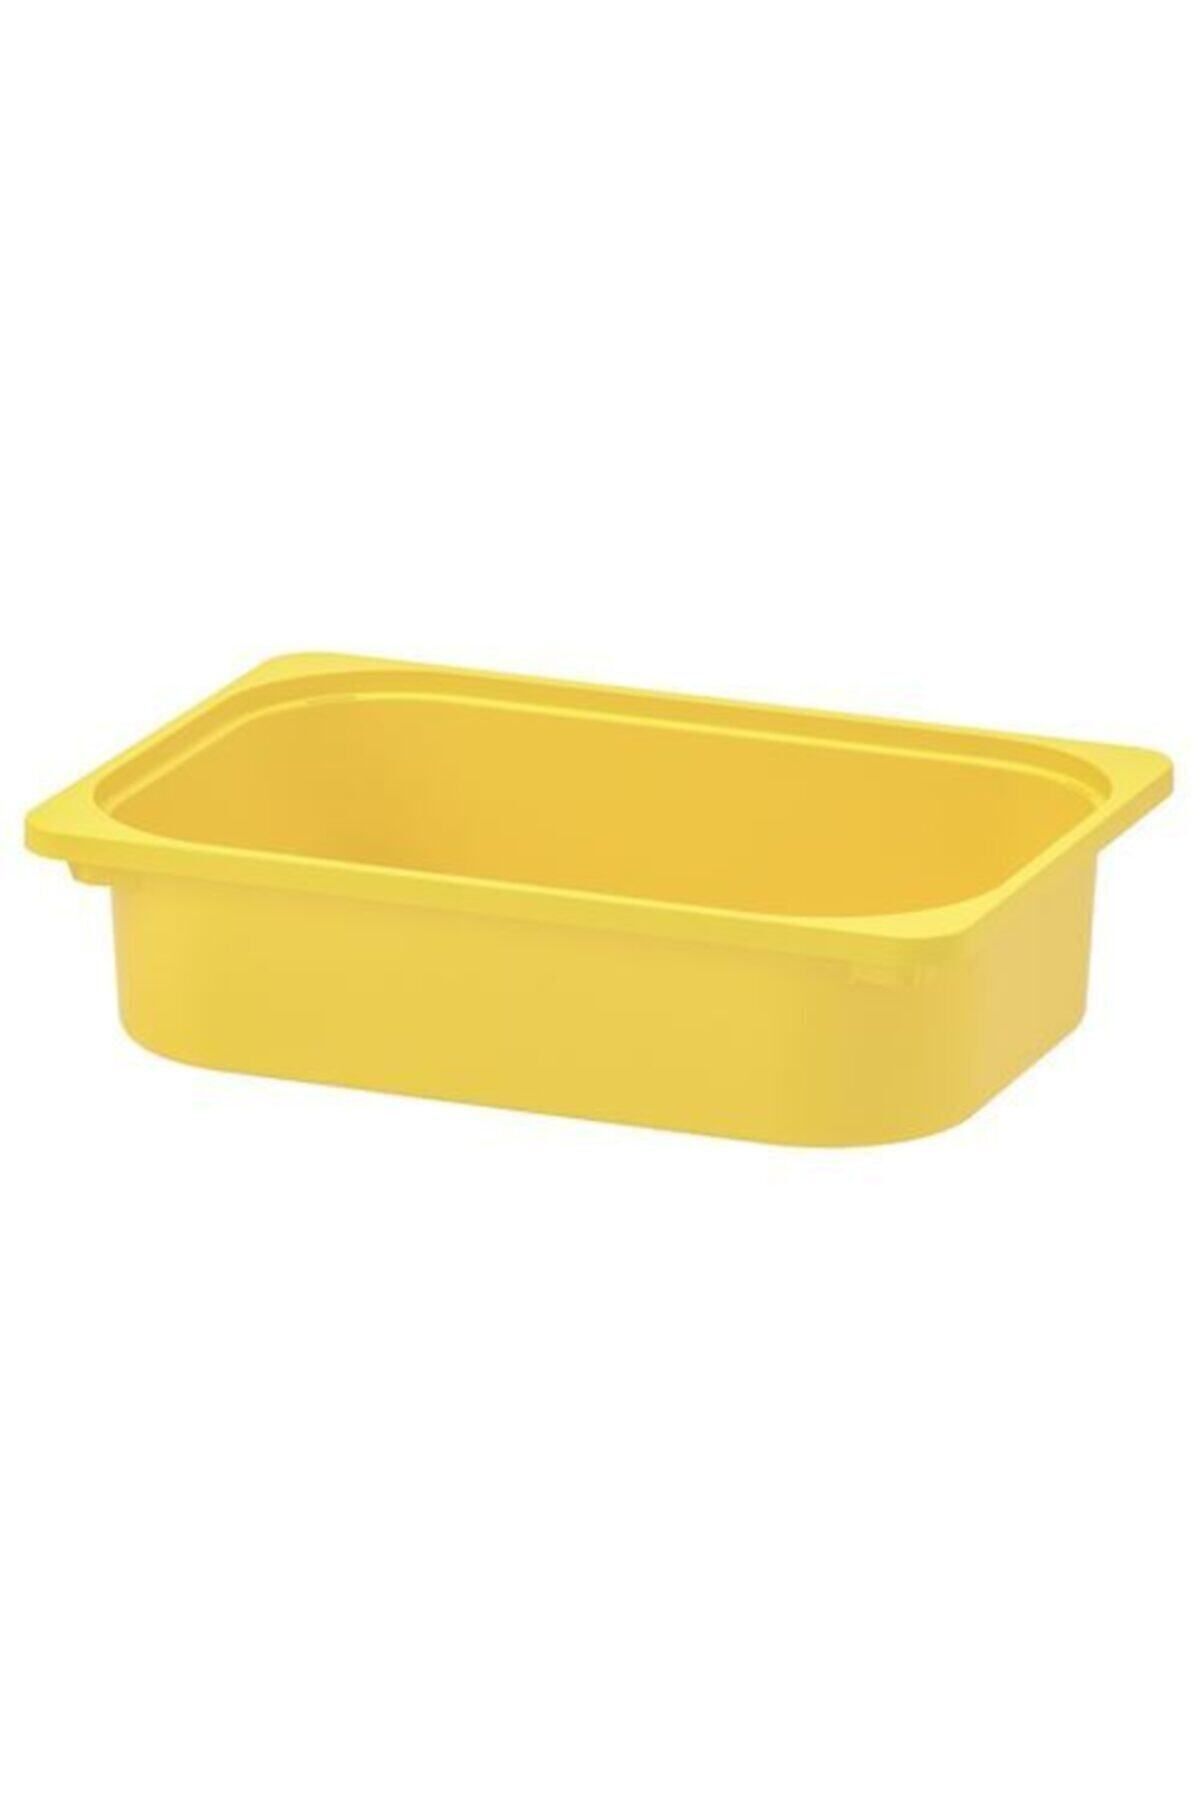 IKEA Çocuk Odası Düzenleme,saklama Kutusu Meridyendukkan Sarı Renk 42x30x10 Cm Raf Ünitesi Kutusu